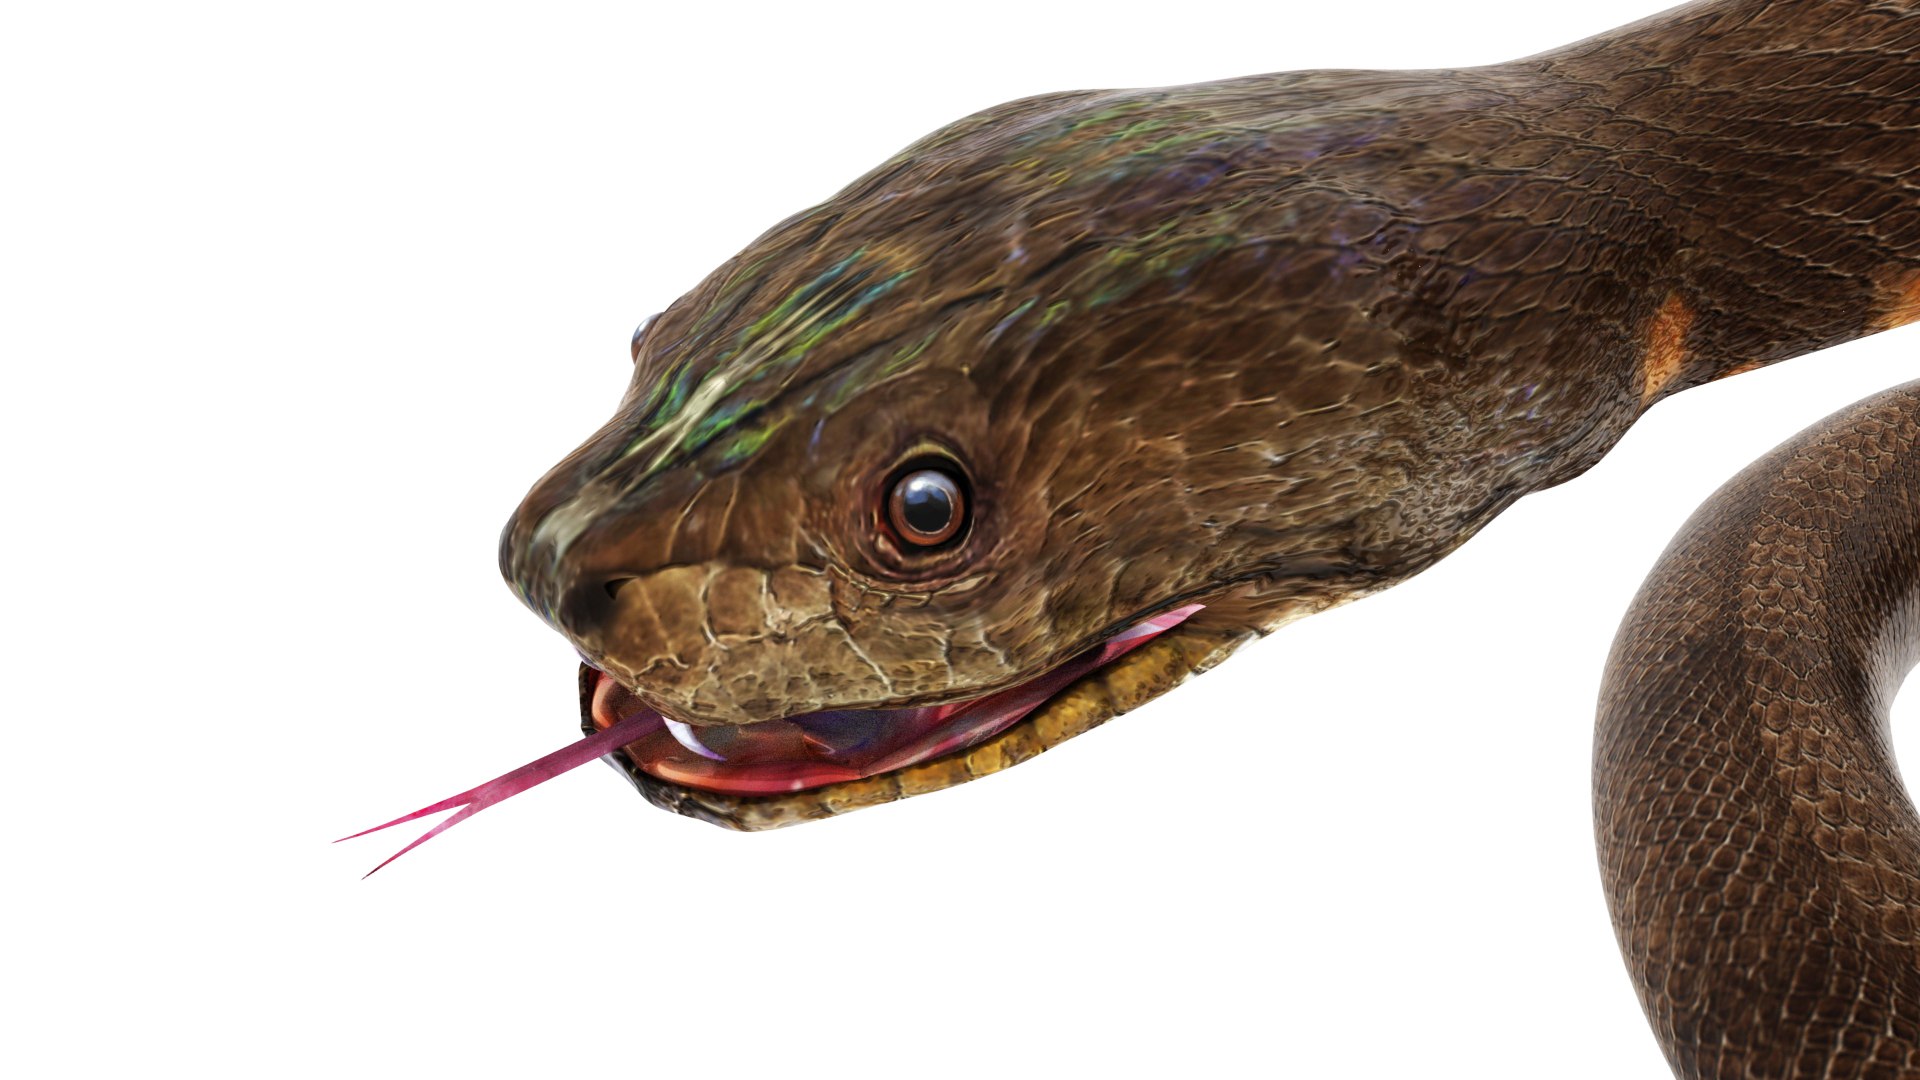 Python snake dark brown colour snake 3D model - TurboSquid 1958339